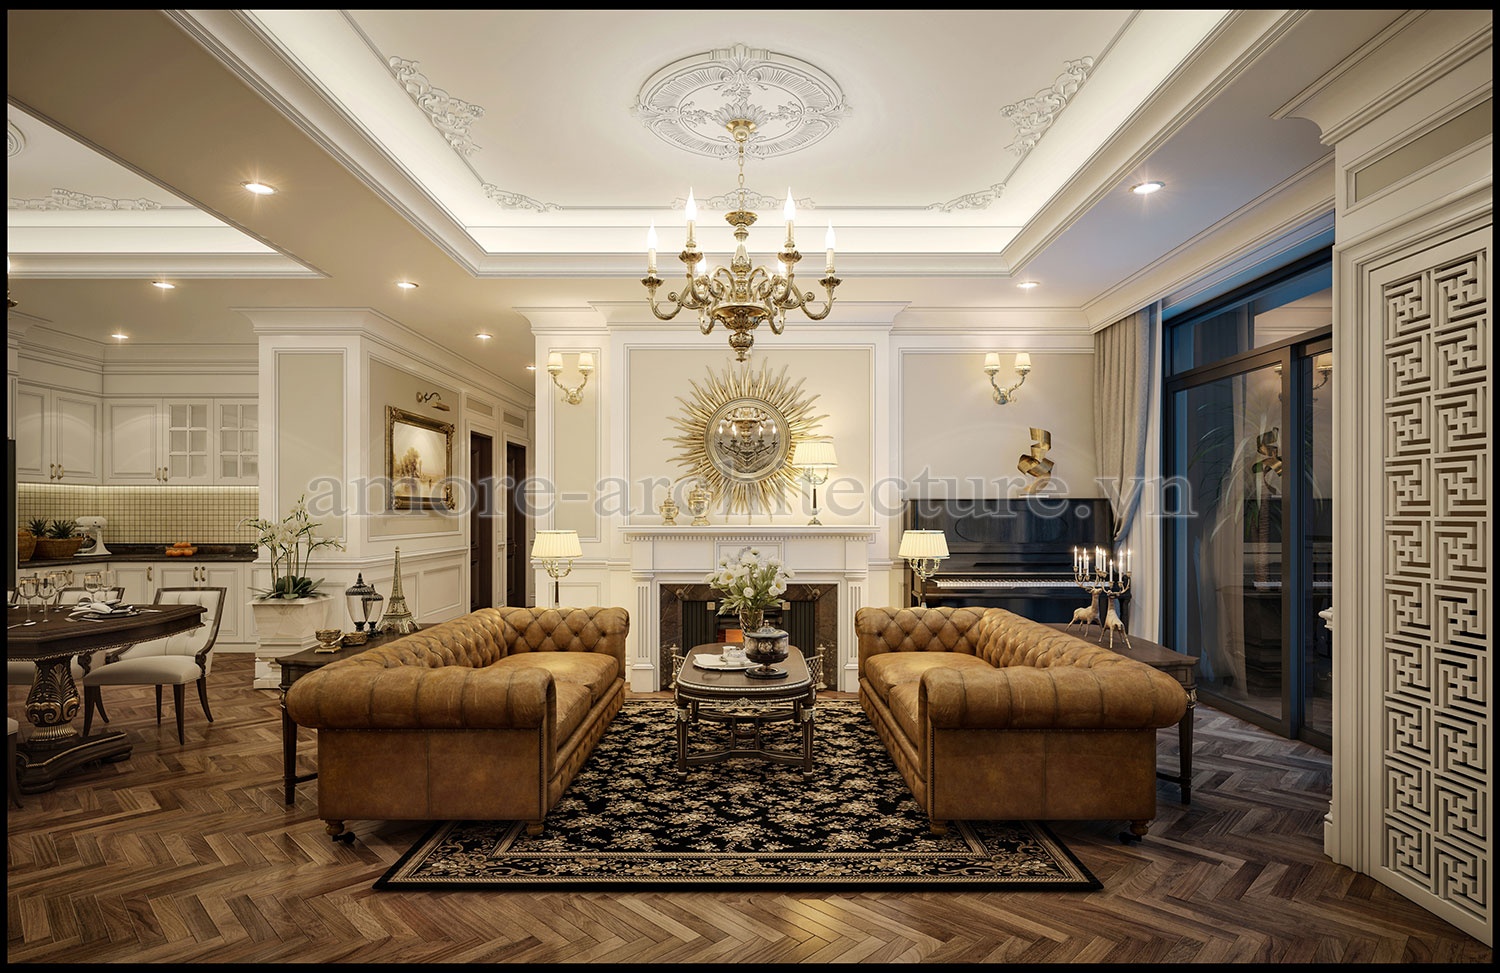 3 mẫu thiết kế nội thất chung cư 60m2 đẹp | Housedesign